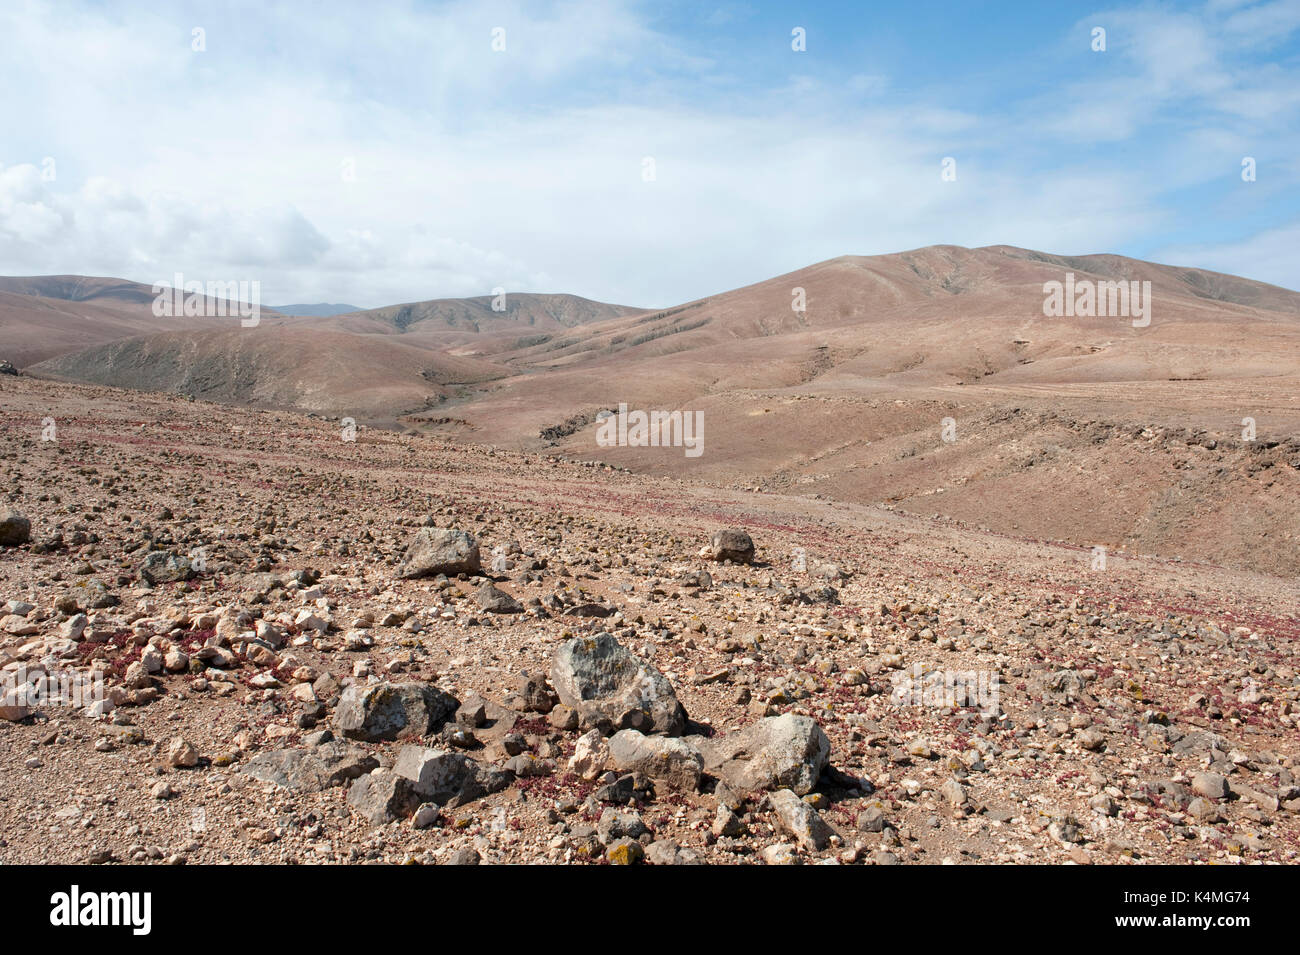 Landscape Views of Los Molinos, Fuerteventura, Canary Islands, Spain Stock Photo